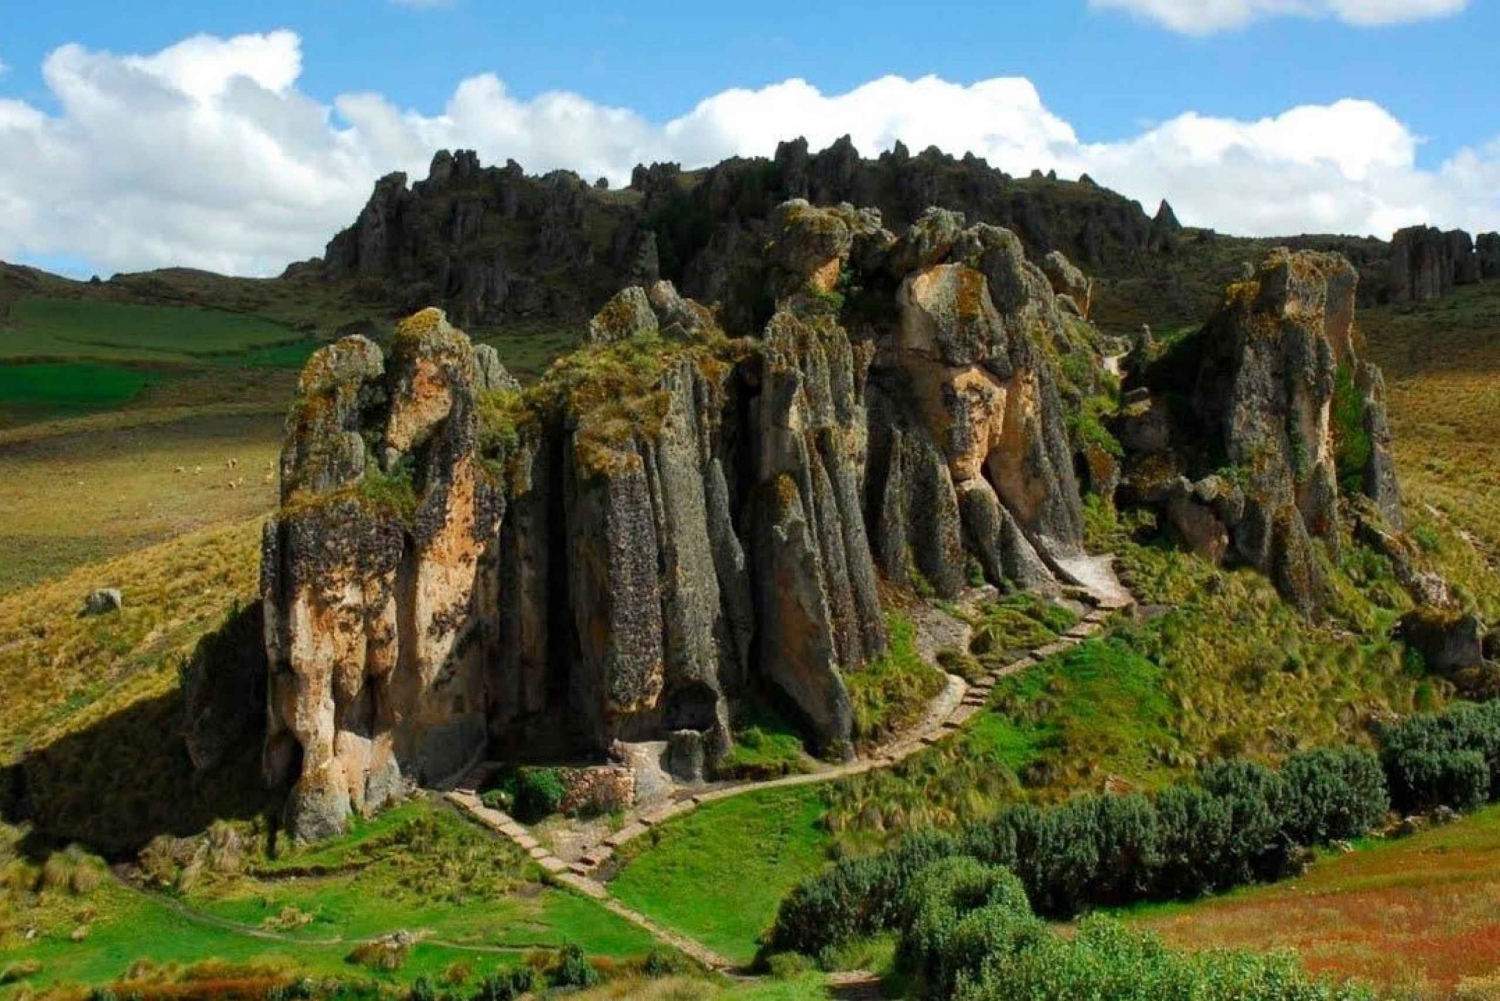 Cajamarca: poznaj kompleks archeologiczny Cumbemayo